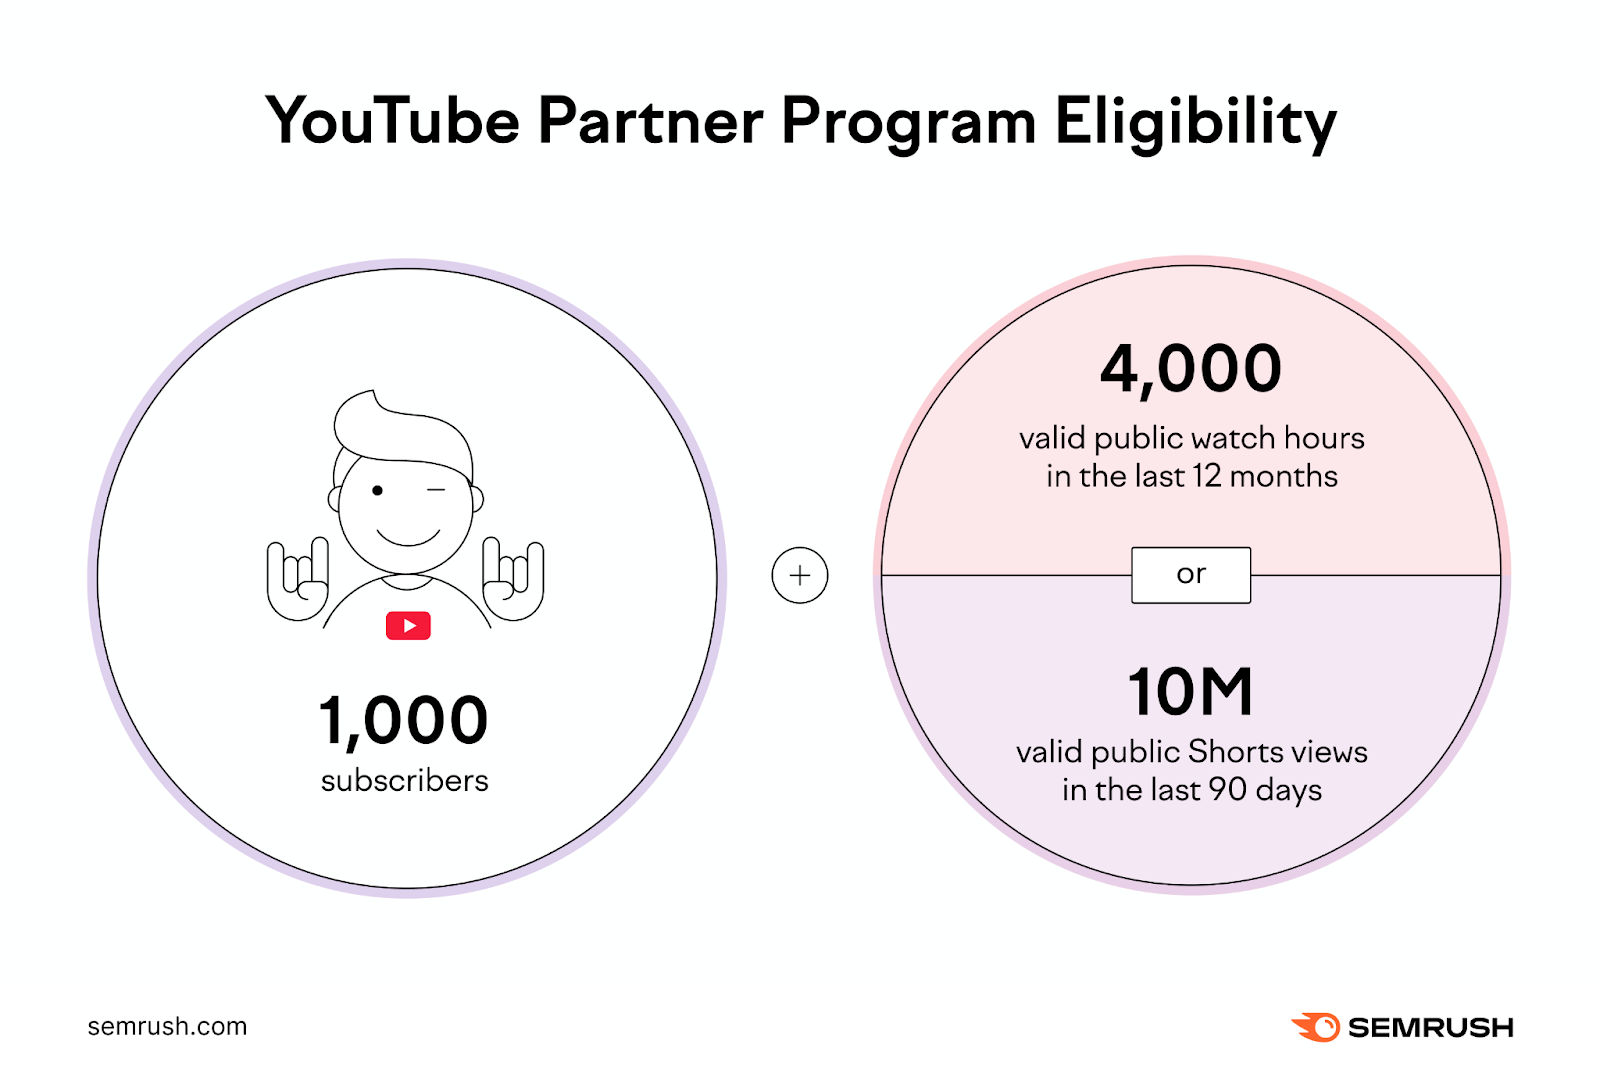 YouTube Partner Program Eligibility